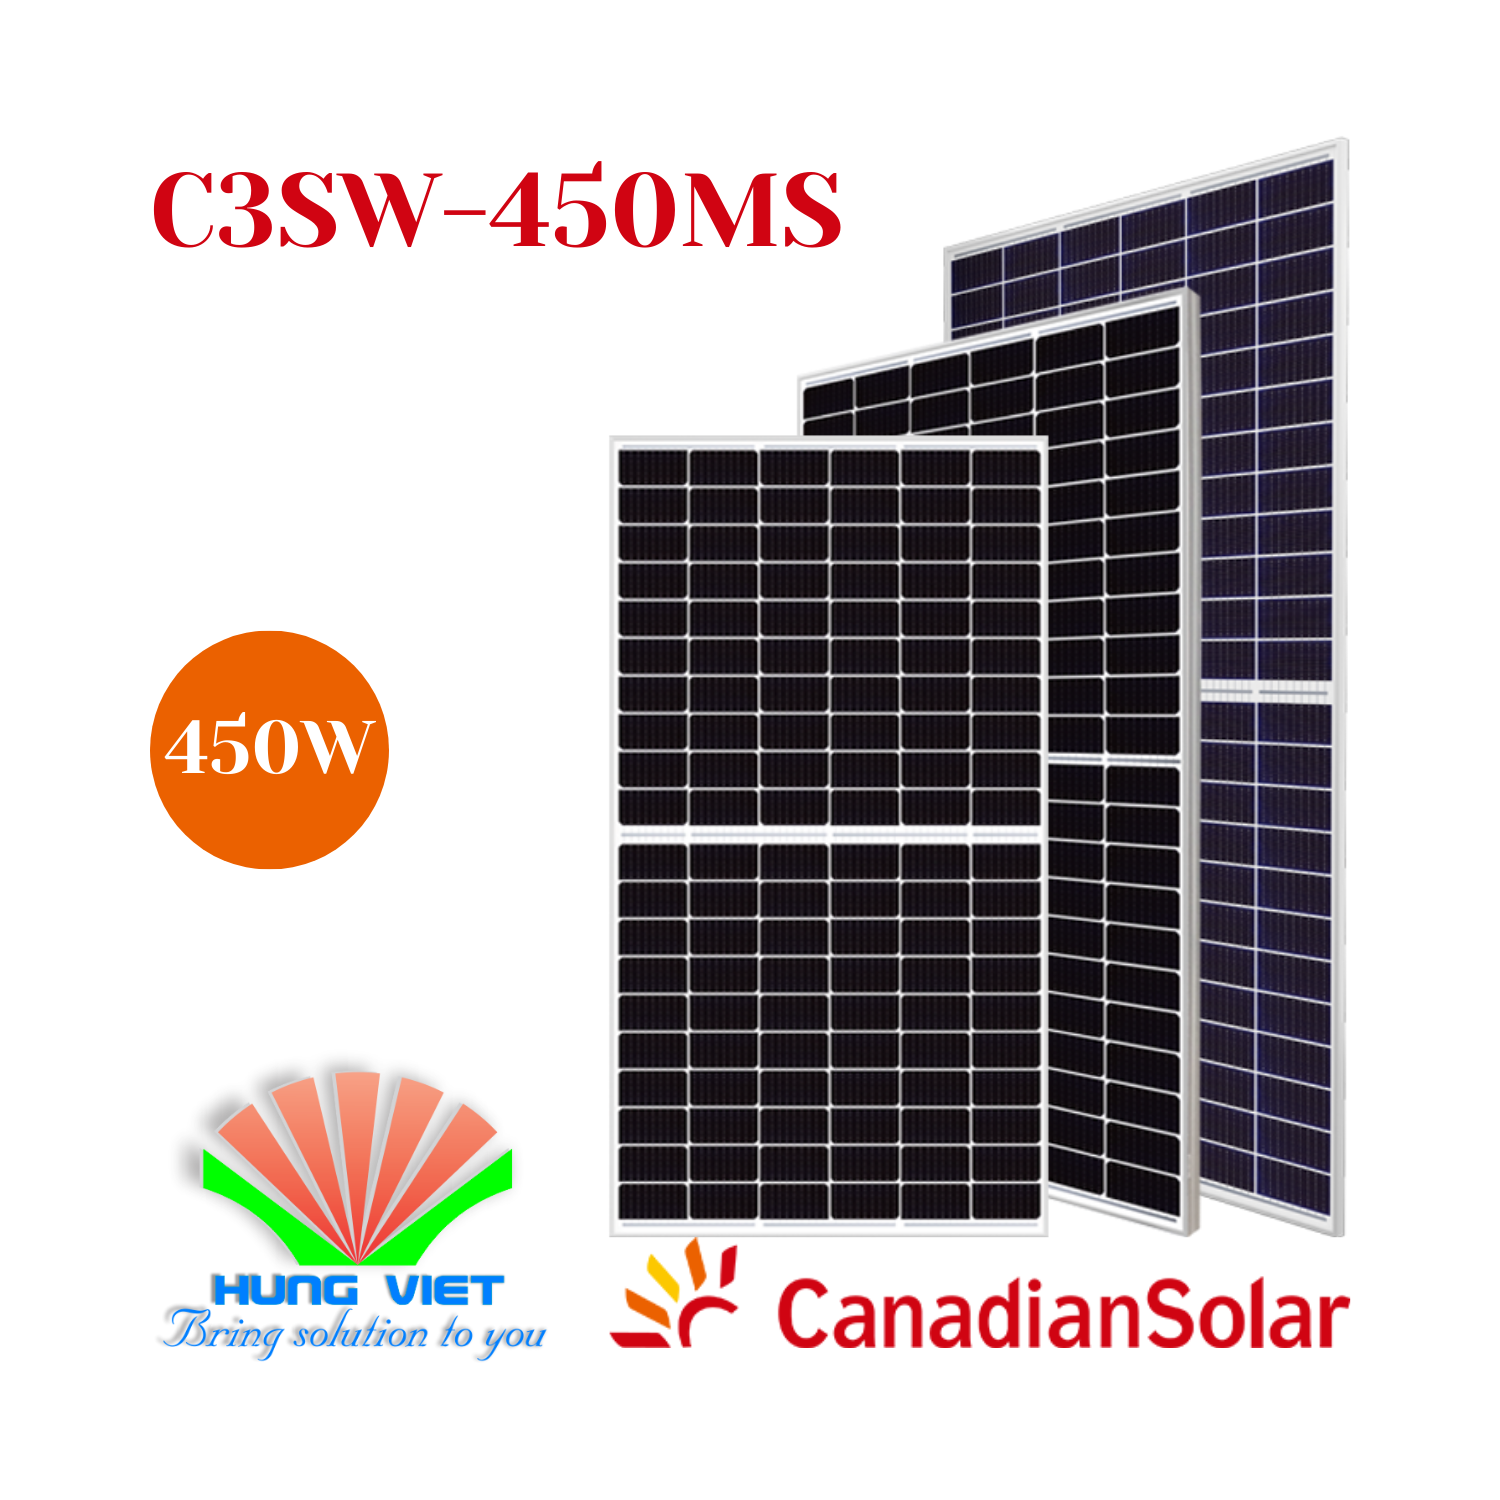 Tấm pin năng lượng mặt trời Canadian Solar 450W - Hiku CS3W-450MS